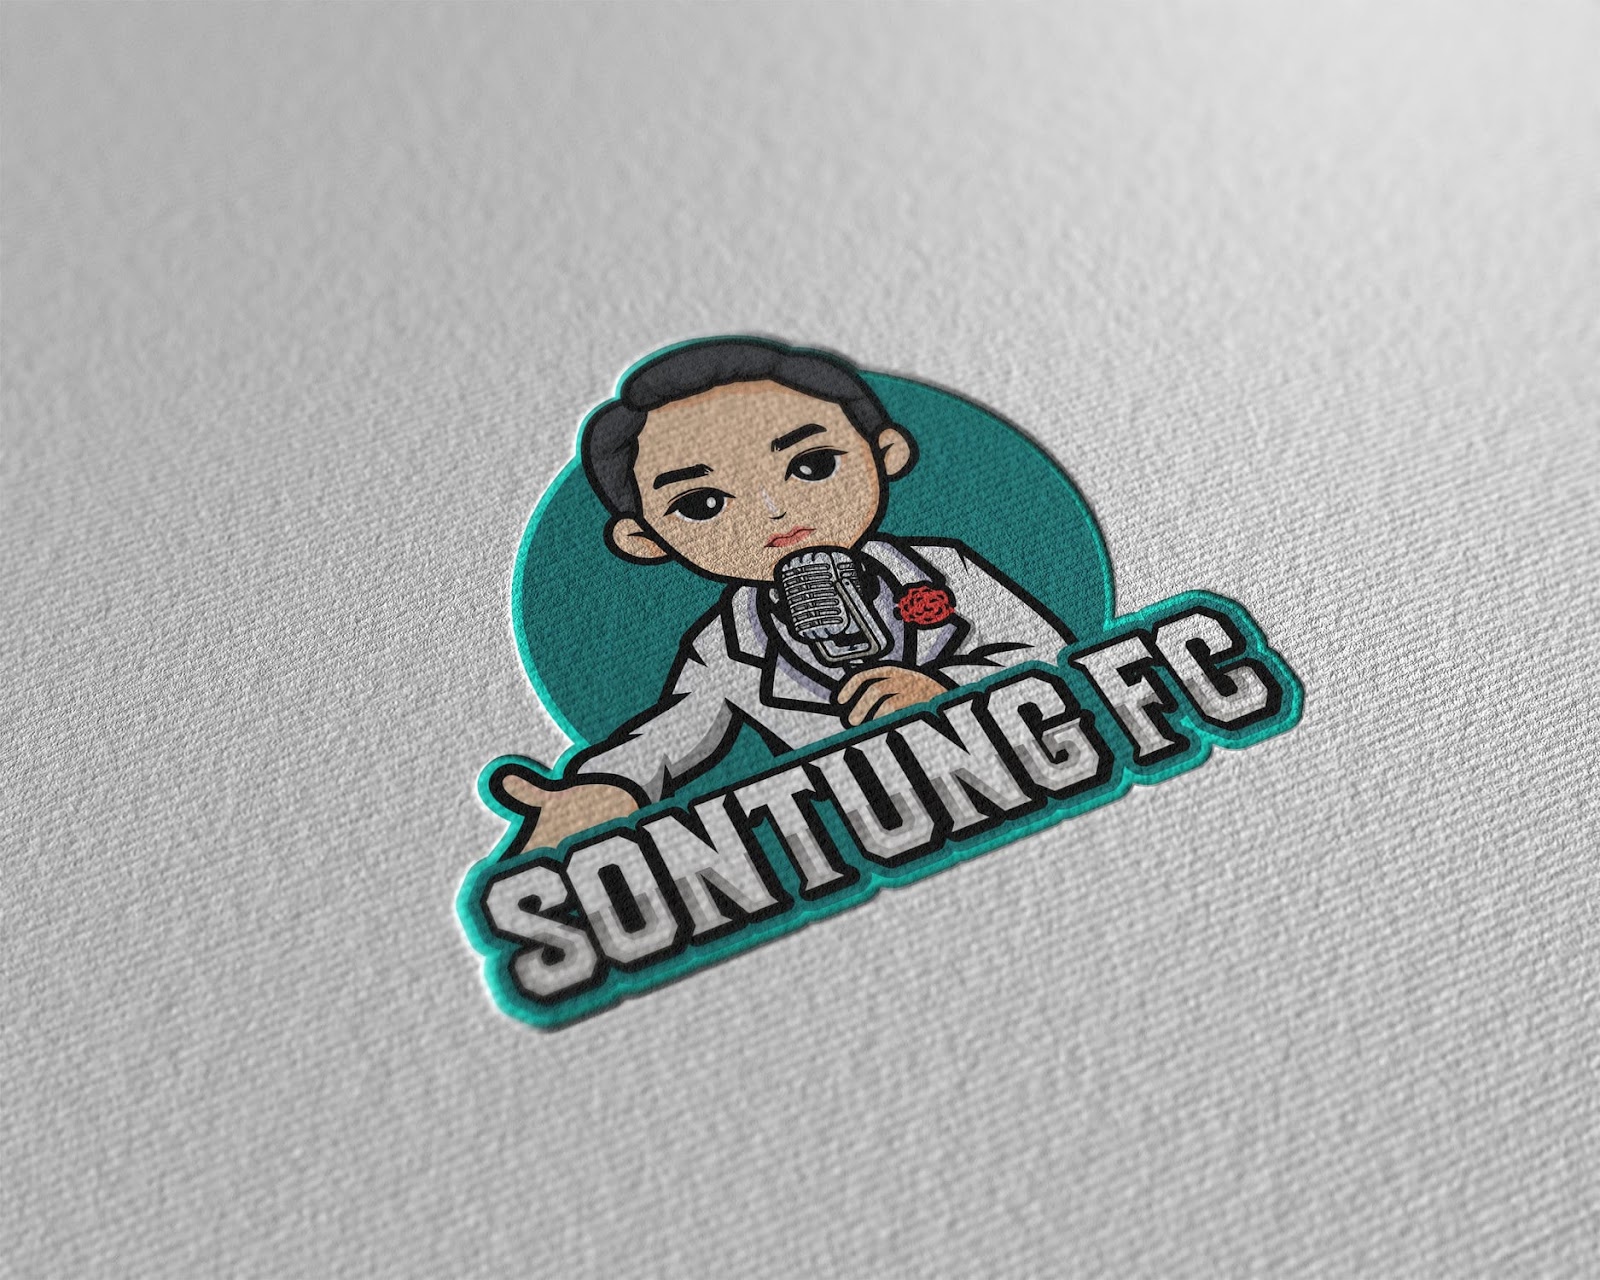 Mẫu thiết kế logo chibi cute Cửa hàng SON TUNG FC  6